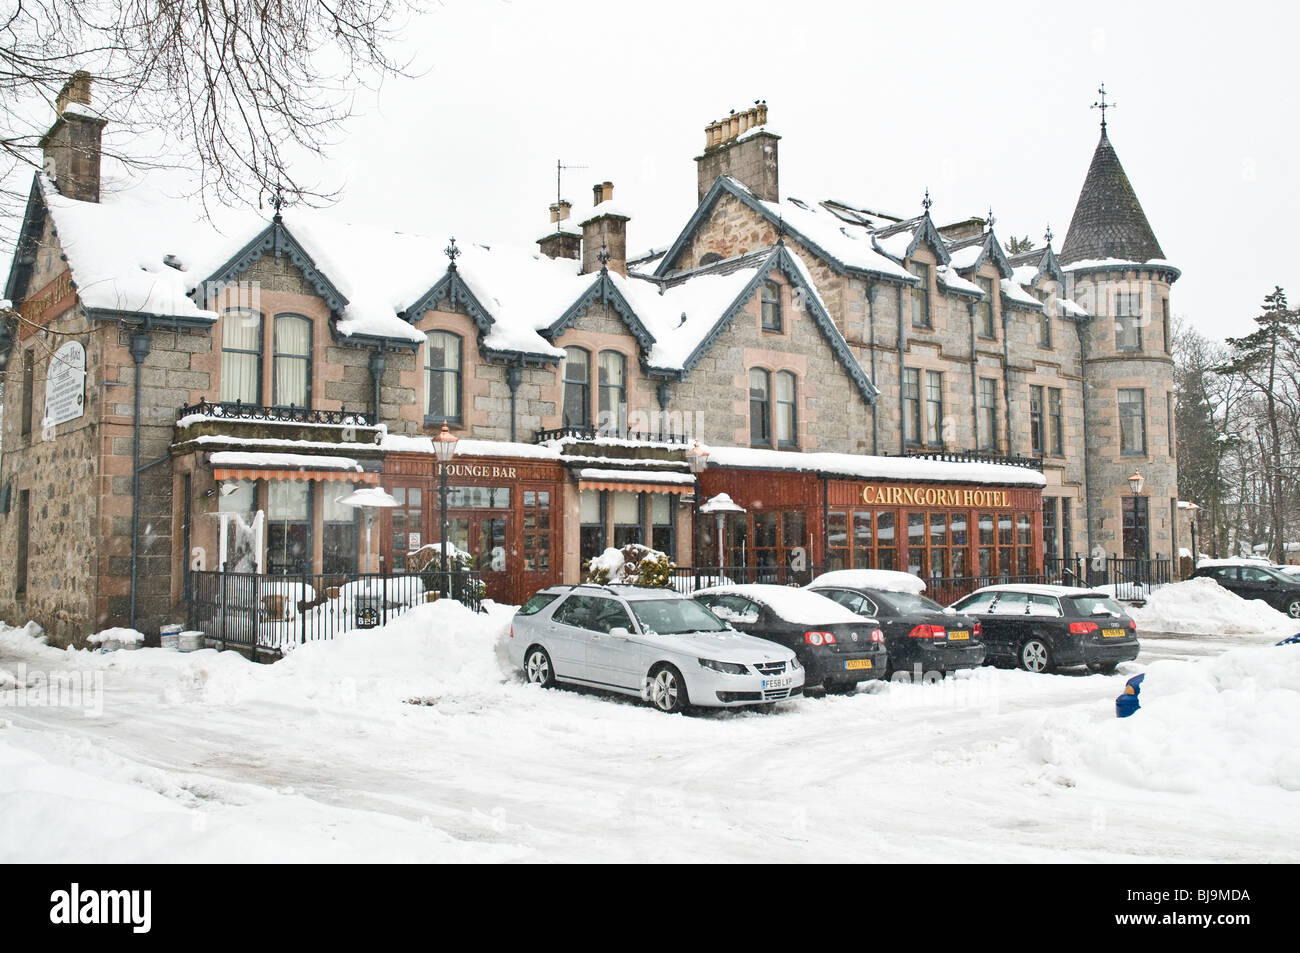 dh Cairngorm Hotel Ecosse AVIEMORE INVERNESSSHIRE Bâtiment hiver vacances neige stations de ski au royaume-uni Banque D'Images